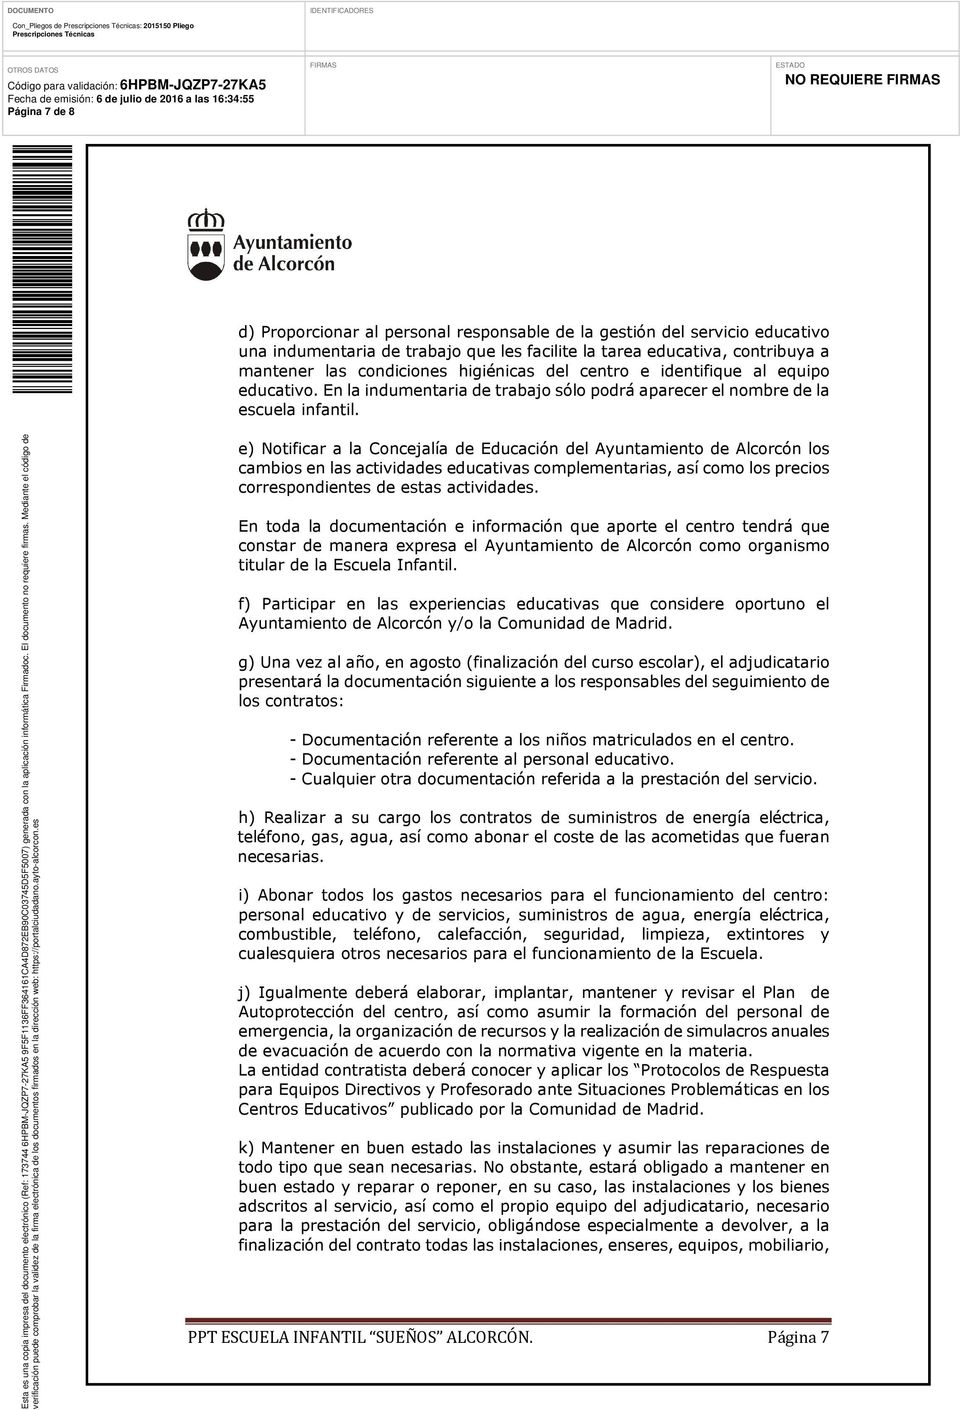 e) Notificar a la Concejalía de Educación del Ayuntamiento de Alcorcón los cambios en las actividades educativas complementarias, así como los precios correspondientes de estas actividades.